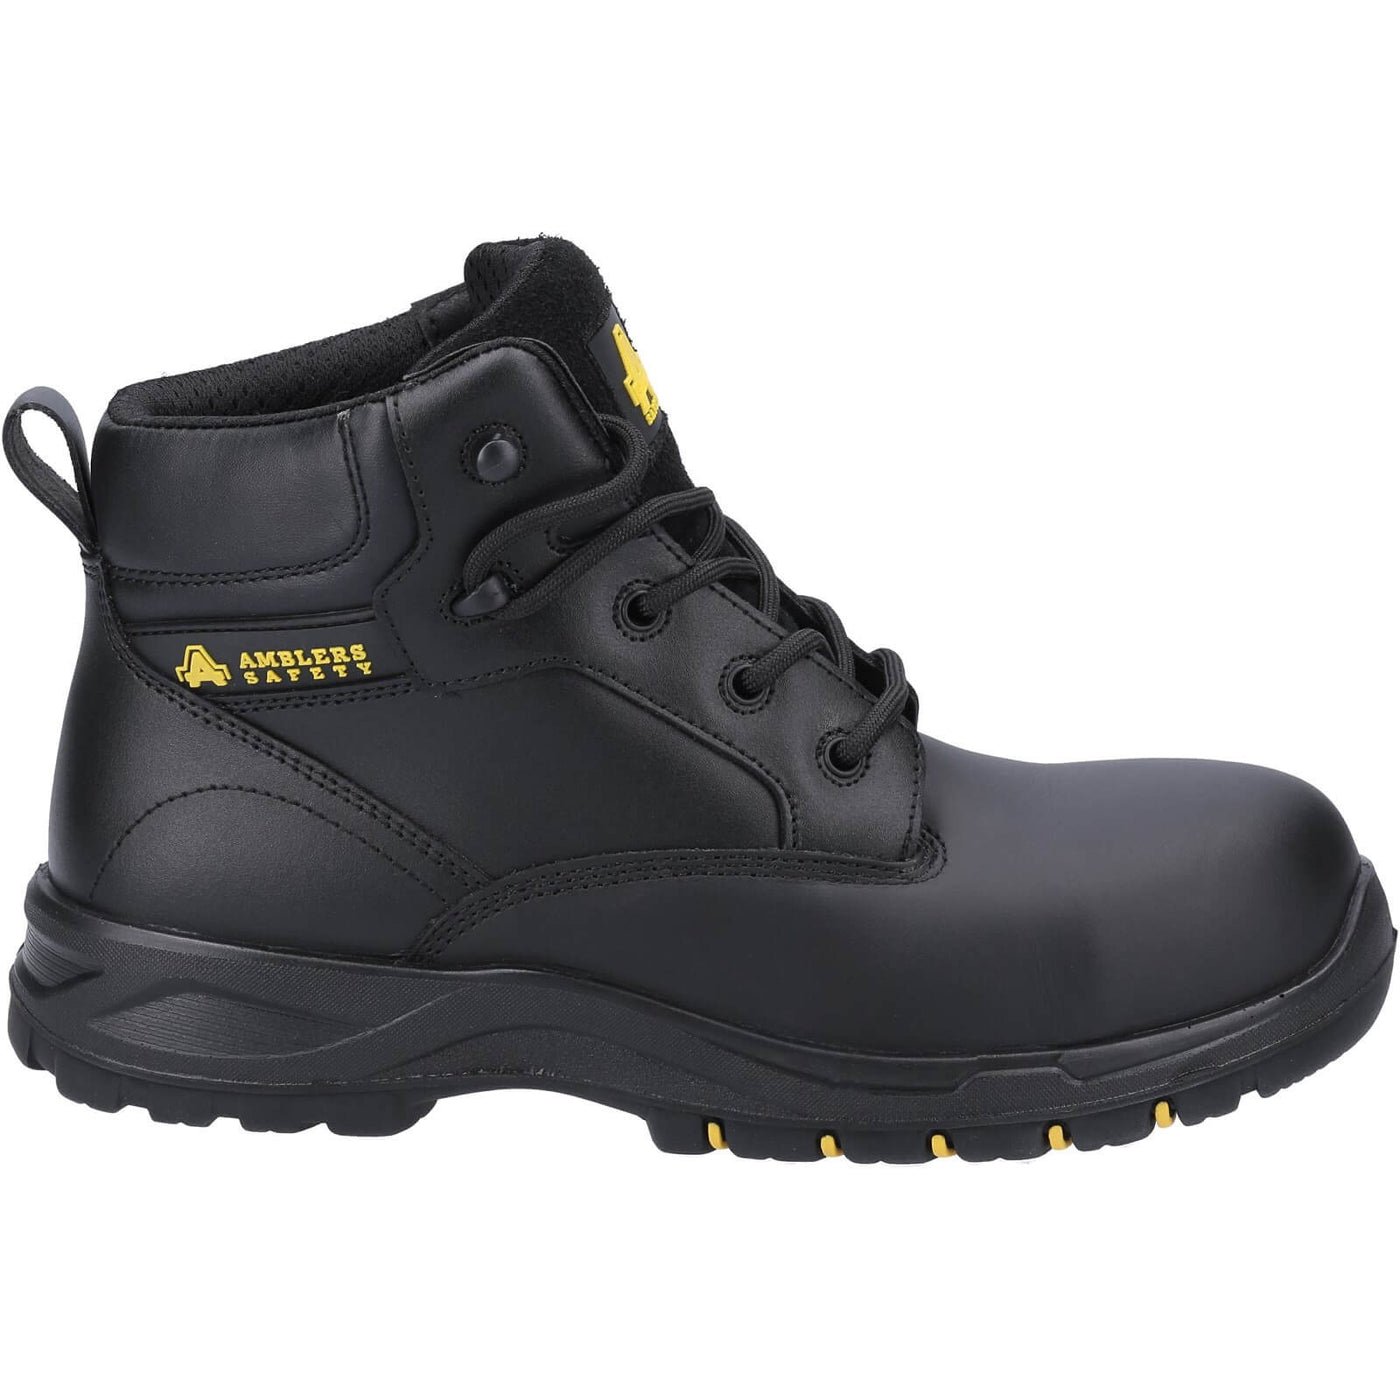 Amblers AS605C Safety Boots Black 4#colour_black